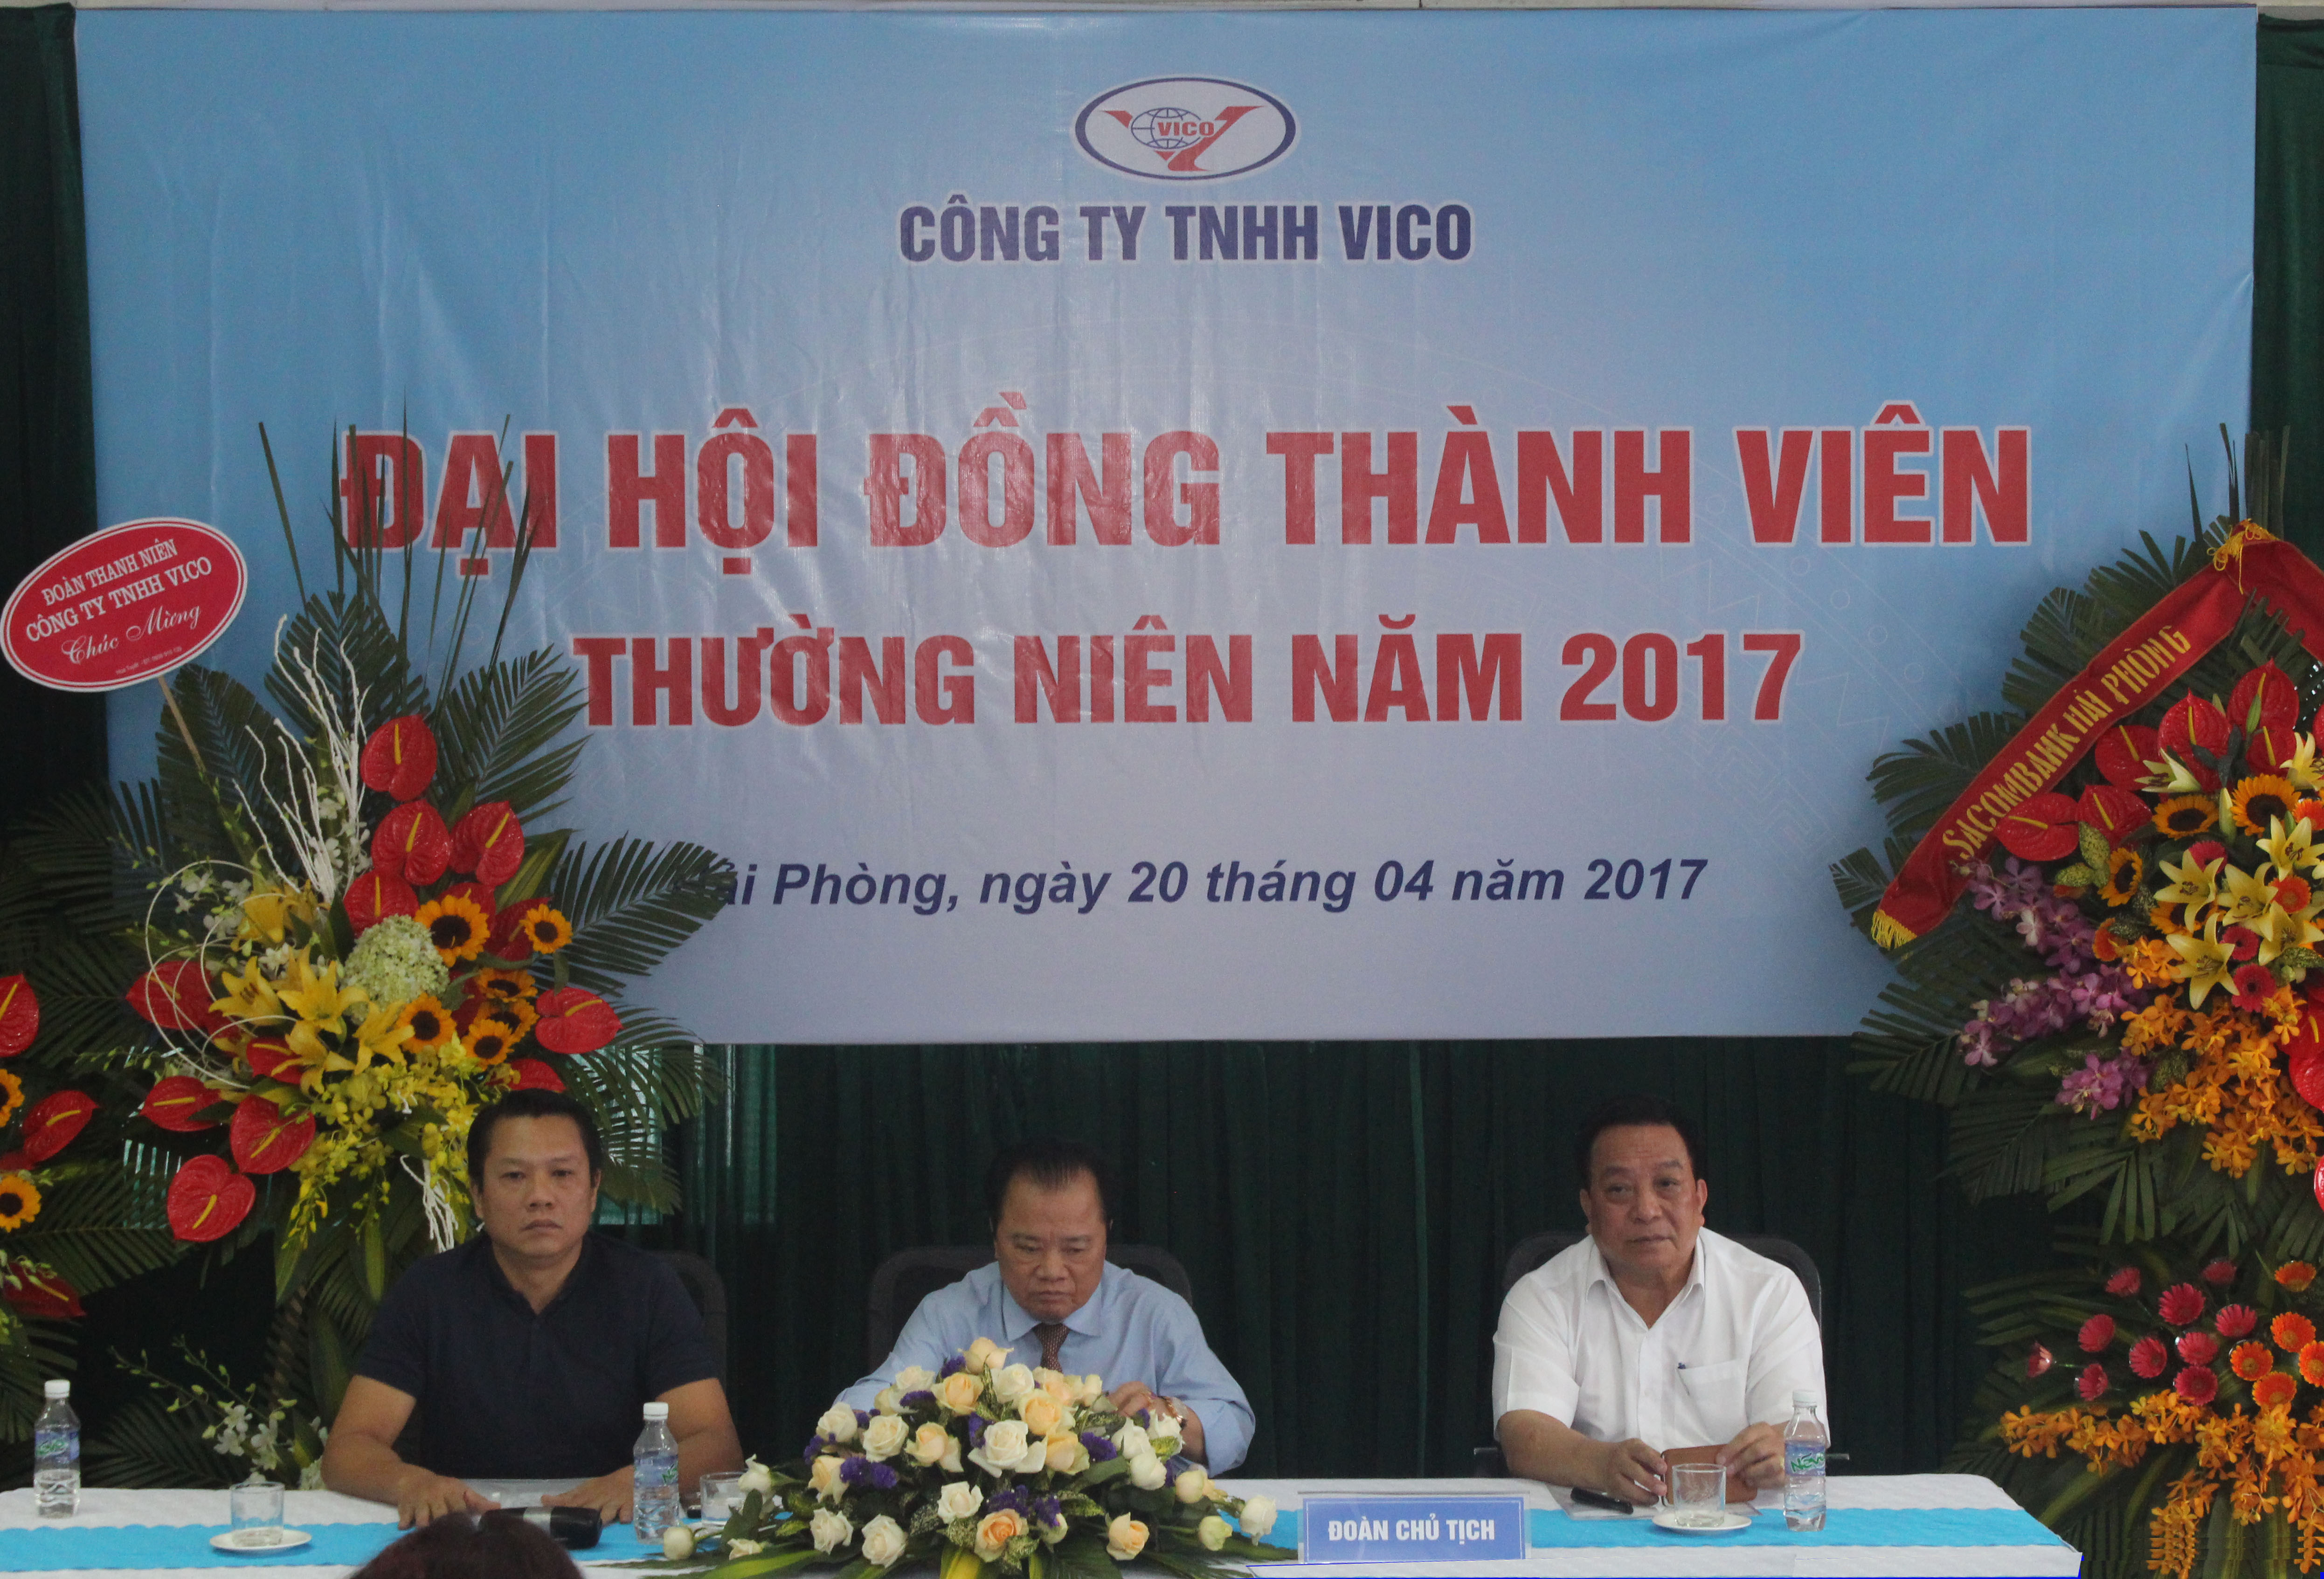 Đại Hội đồng Thành viên công ty TNHH VICO